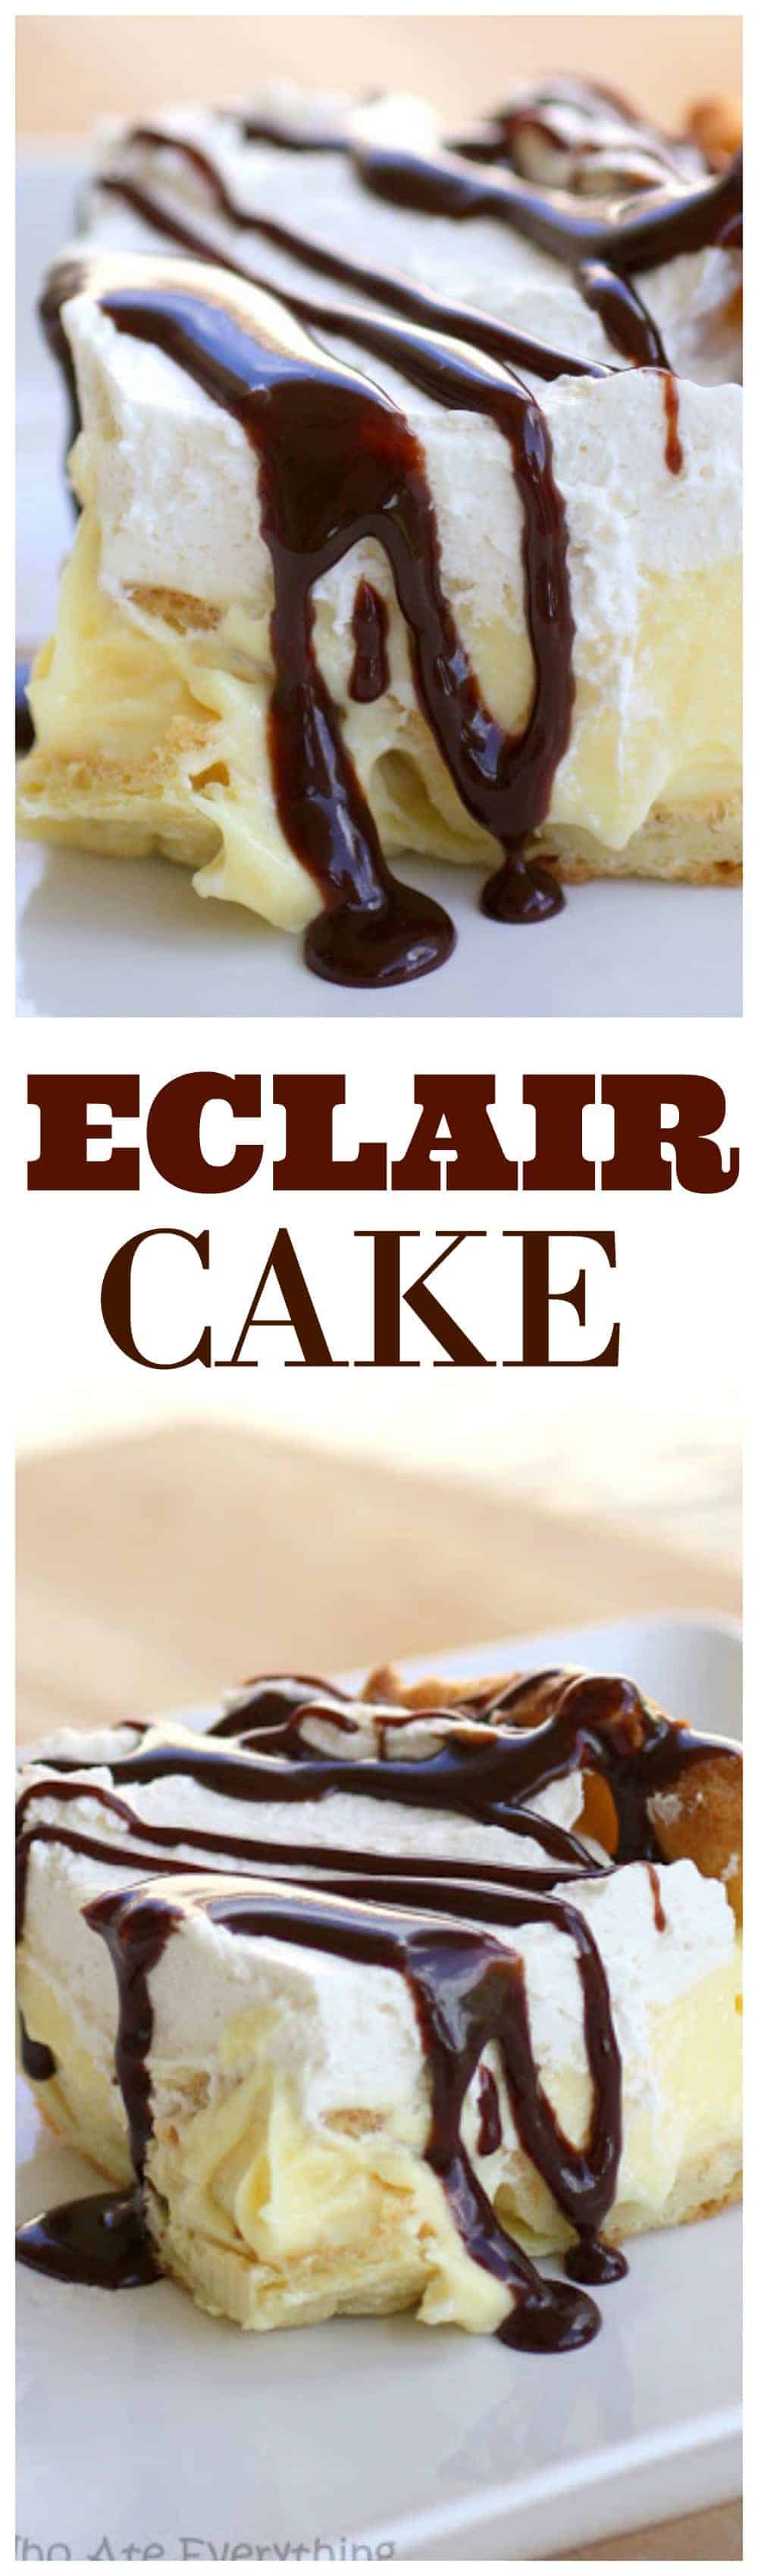 Ce gâteau Eclair a une croûte de choux à la crème, une couche de fromage à la crème à la vanille, de la crème fouettée et un filet de chocolat.  C'est toutes les saveurs d'un éclair sous forme de gâteau.  #chocolat #éclair #gâteau #recette #dessert